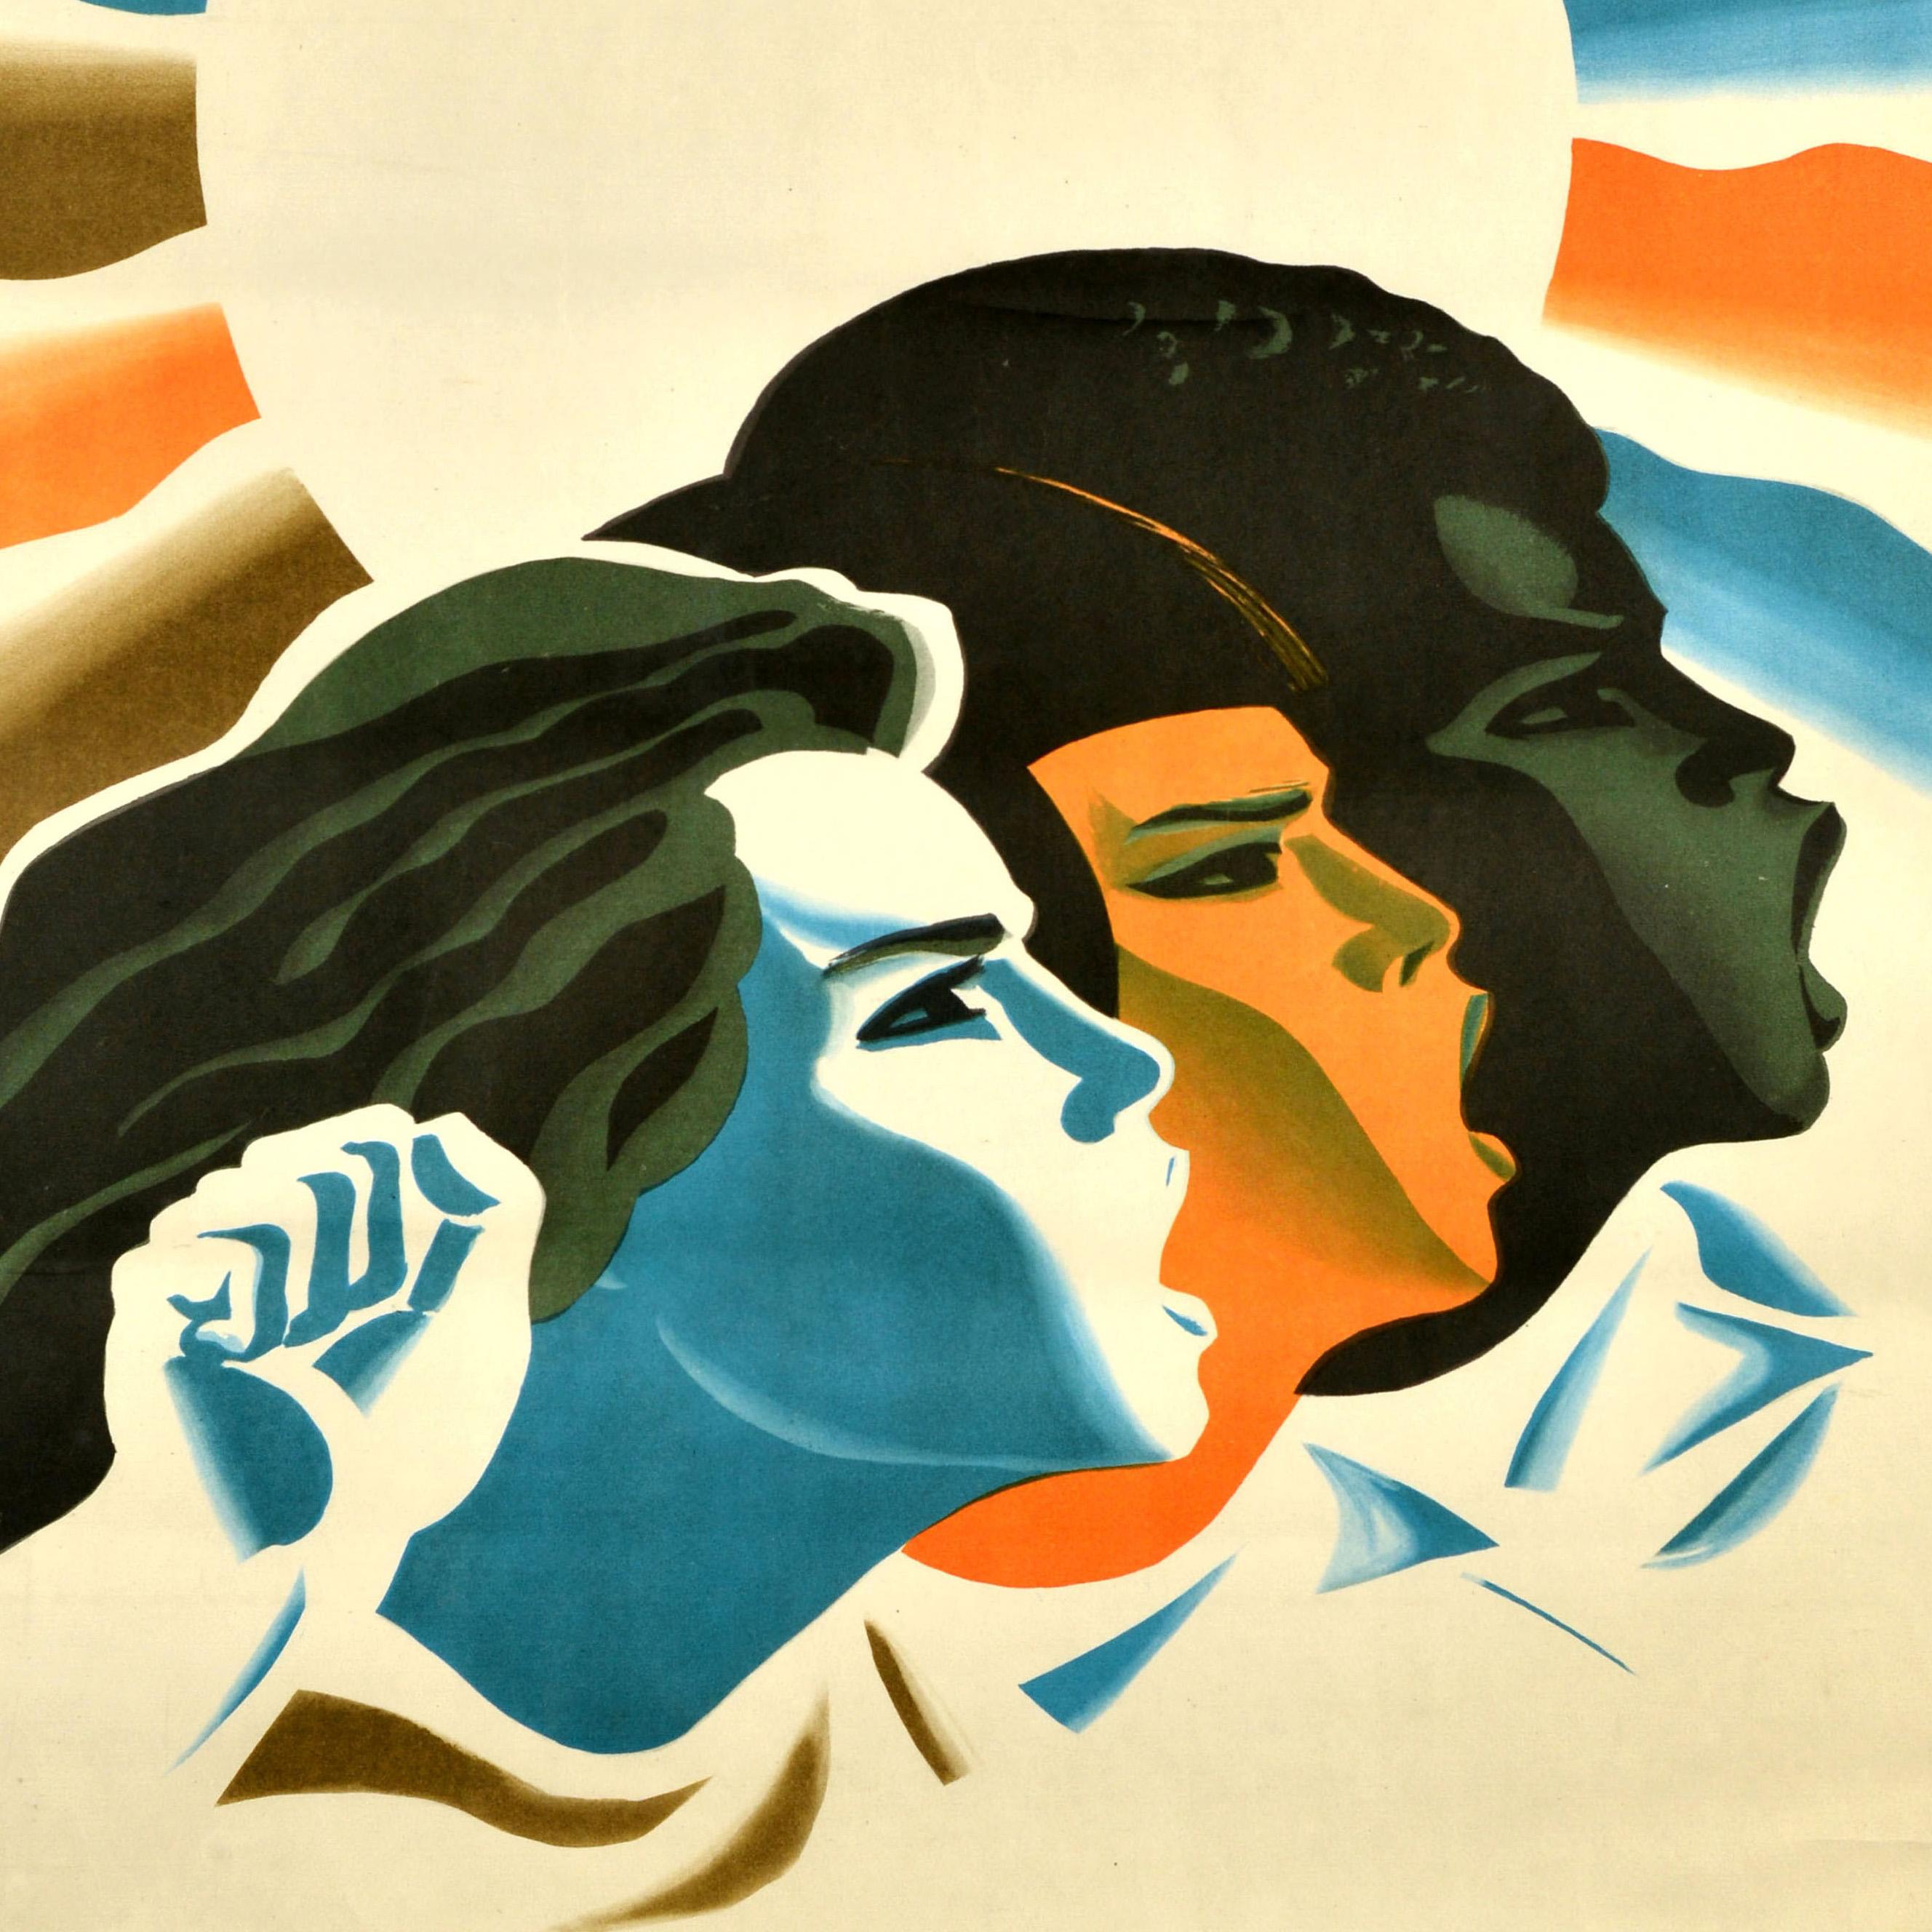 Affiche de propagande soviétique d'époque - Pour la solidarité des femmes du monde / За солидарность женщин мира ! - représentant une image de trois femmes représentant différents pays et criant pour les droits des femmes et l'égalité devant le